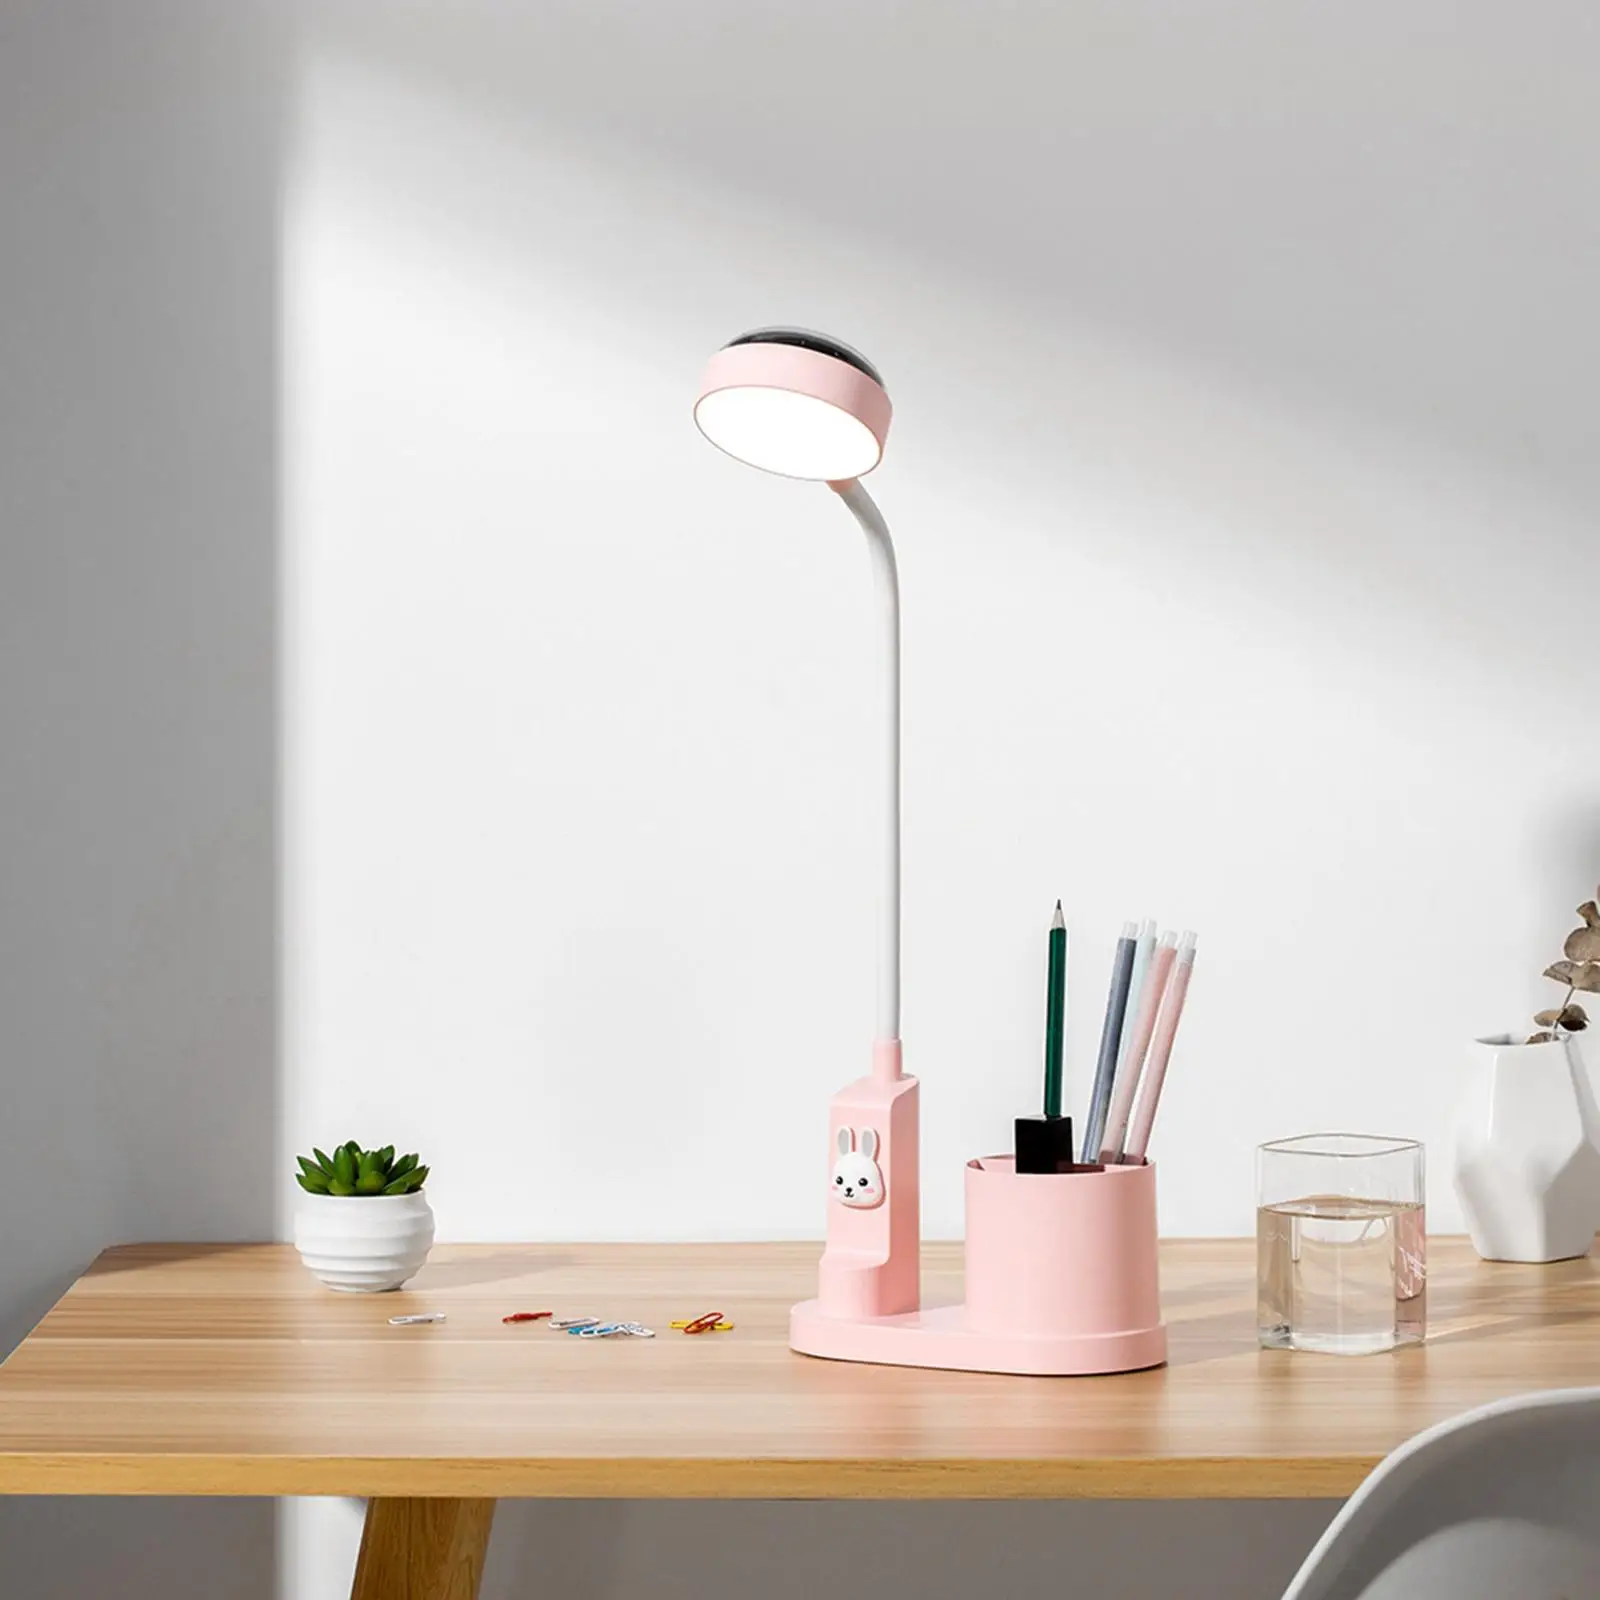 LED Desktop Lamp Flexible Gooseneck 3 Brightness Desk Light Dimmable Table Lamp with Pen Holder Star Projector Light for Home